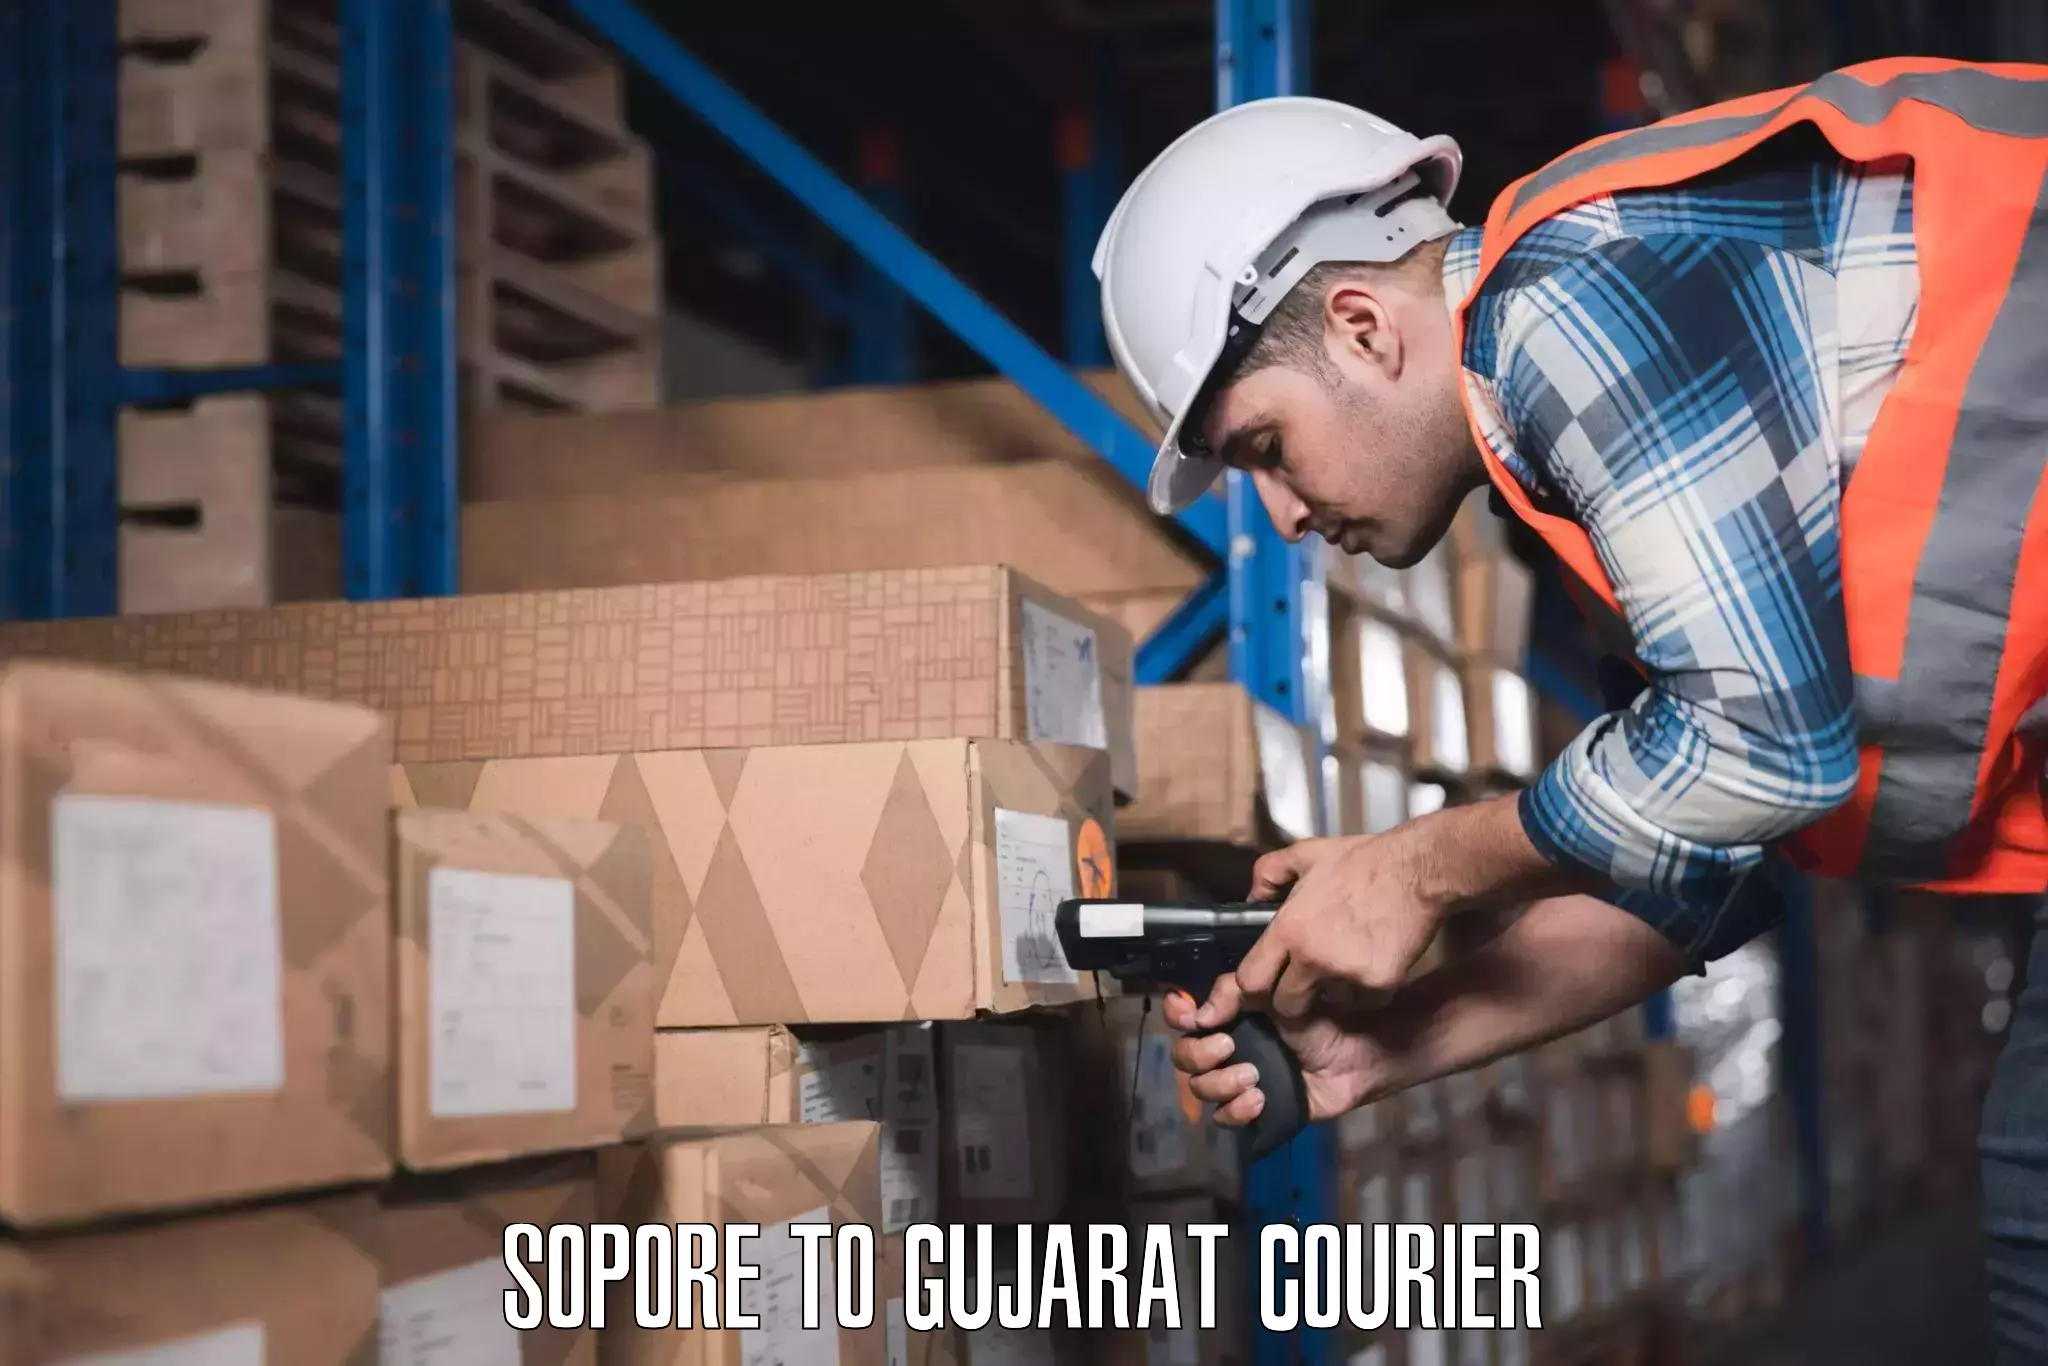 Luggage delivery providers Sopore to Vijapur